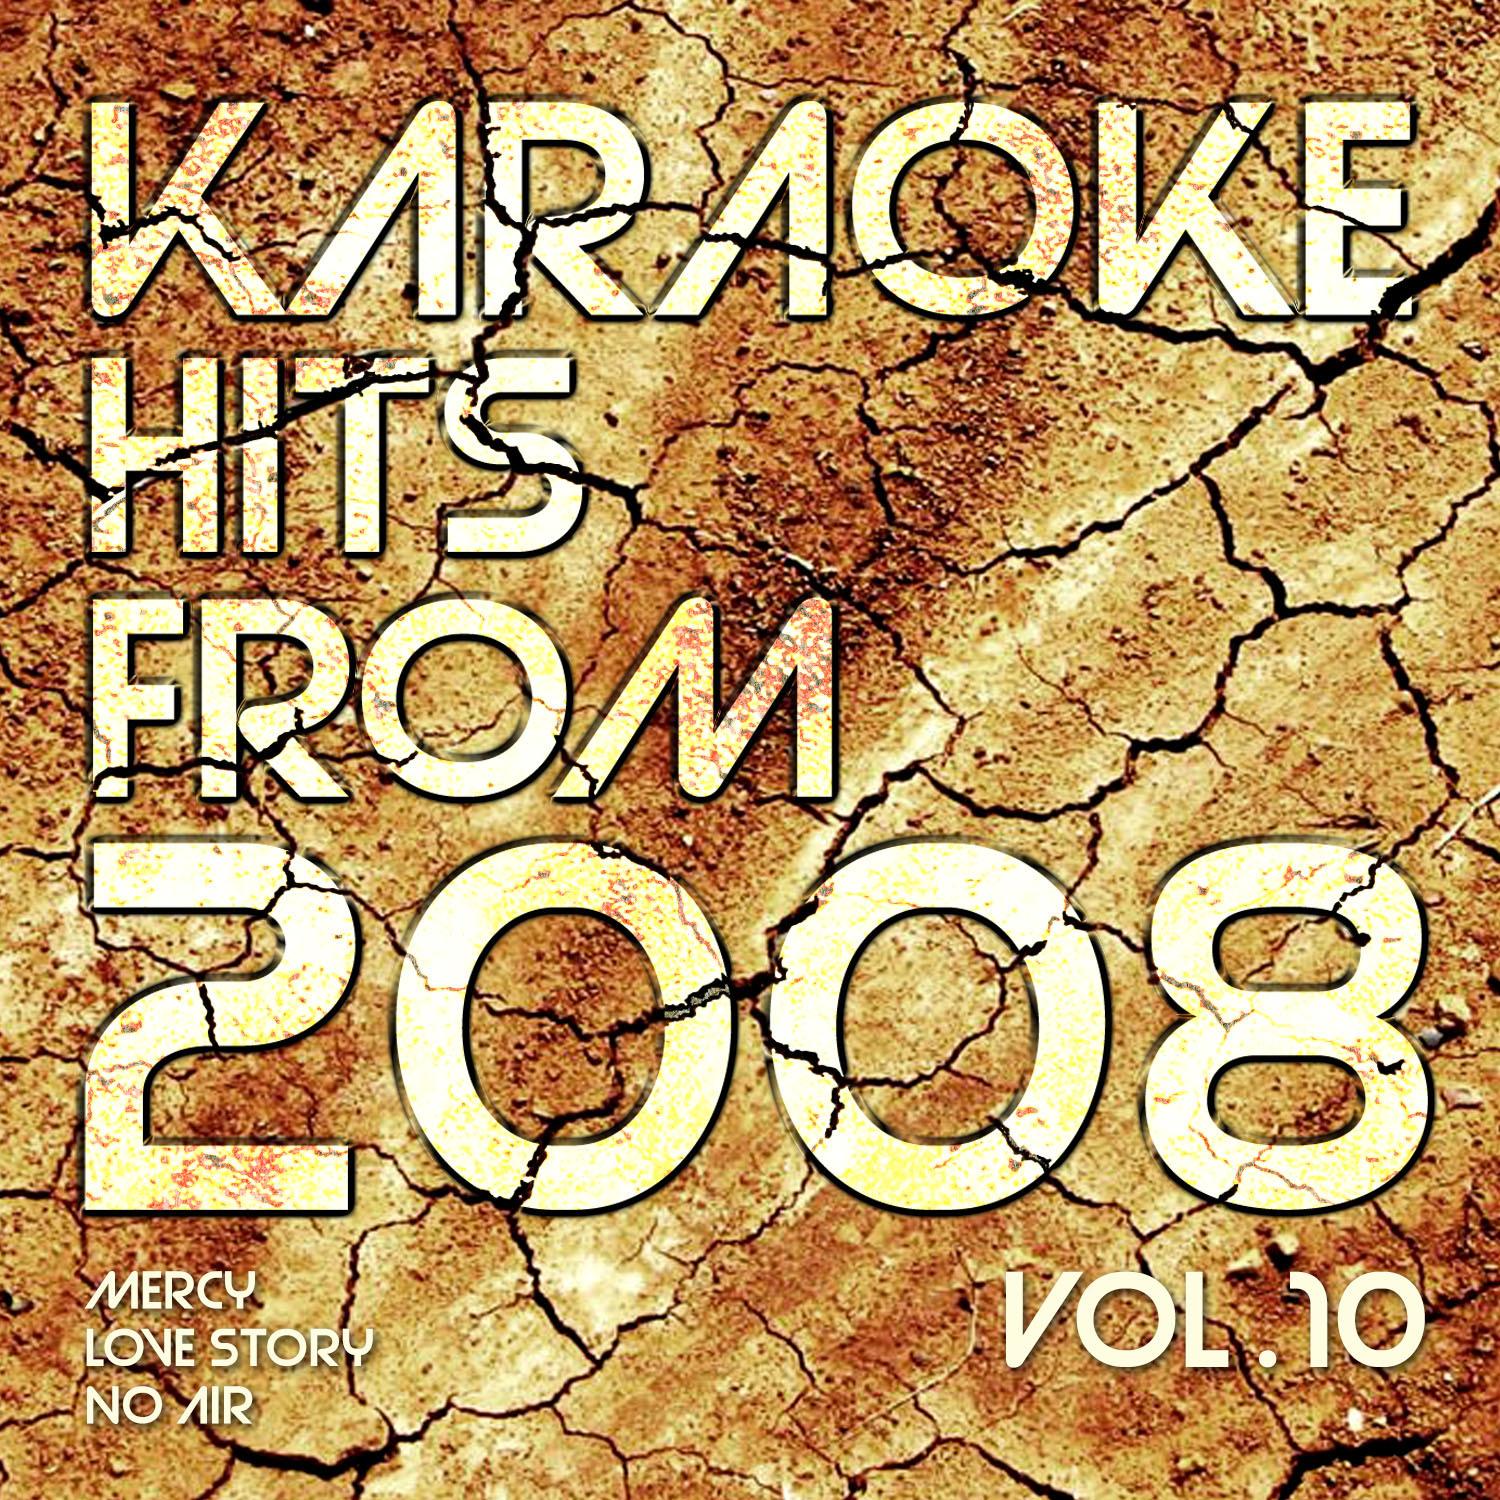 Karaoke Hits from 2008, Vol. 10